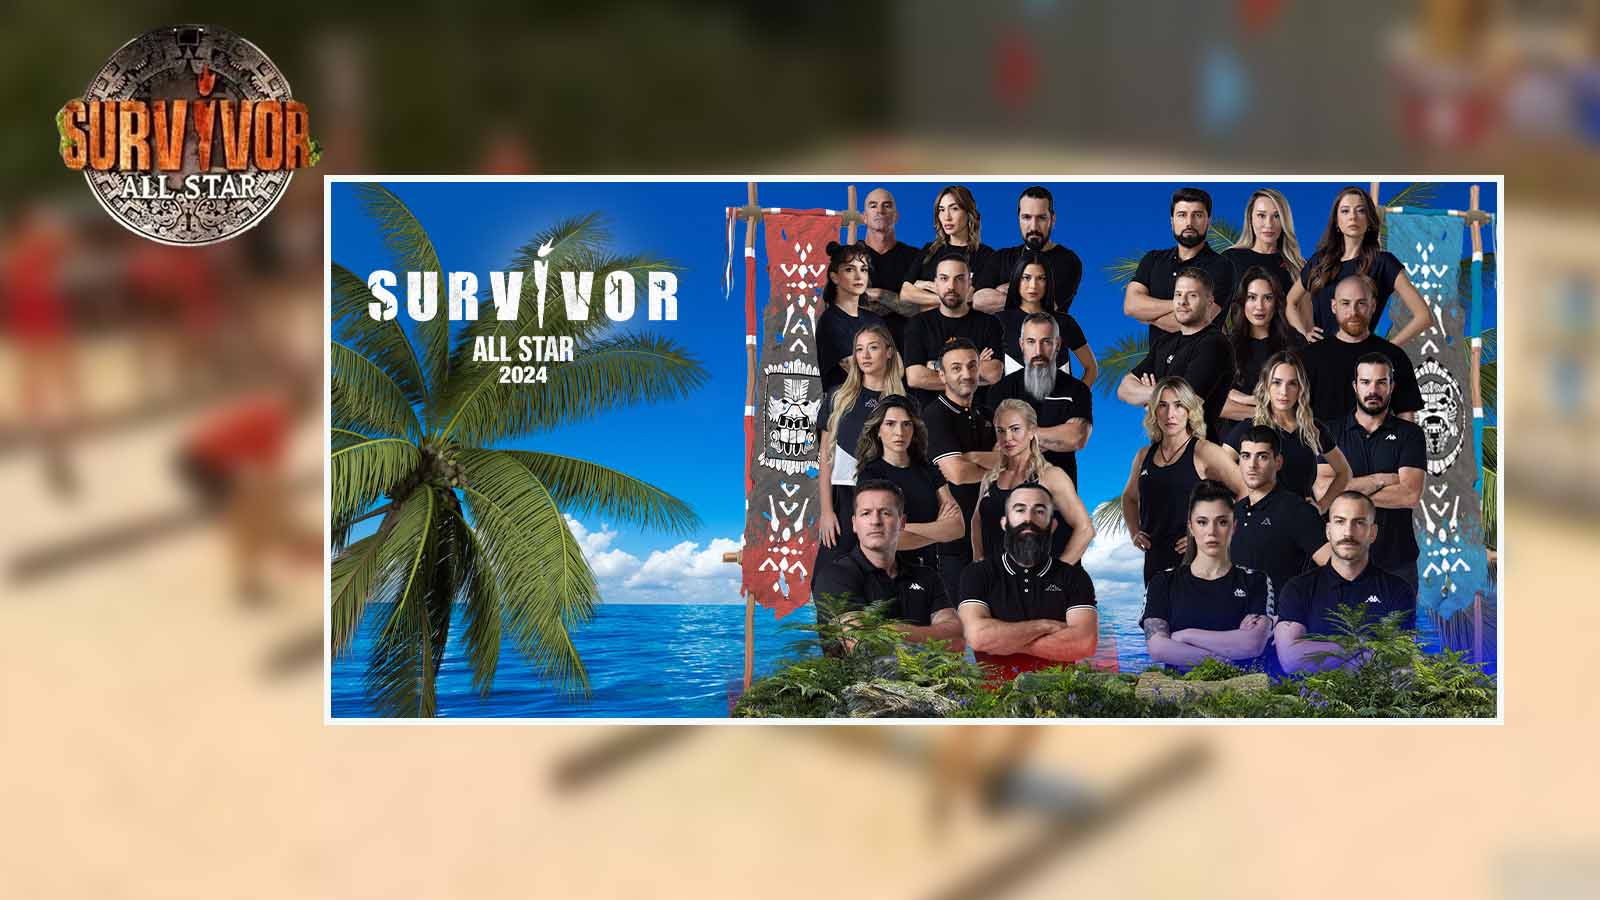 Survivor finali ne zaman, nerede yapılacak? Survivor 2024 final biletleri ne kadar?